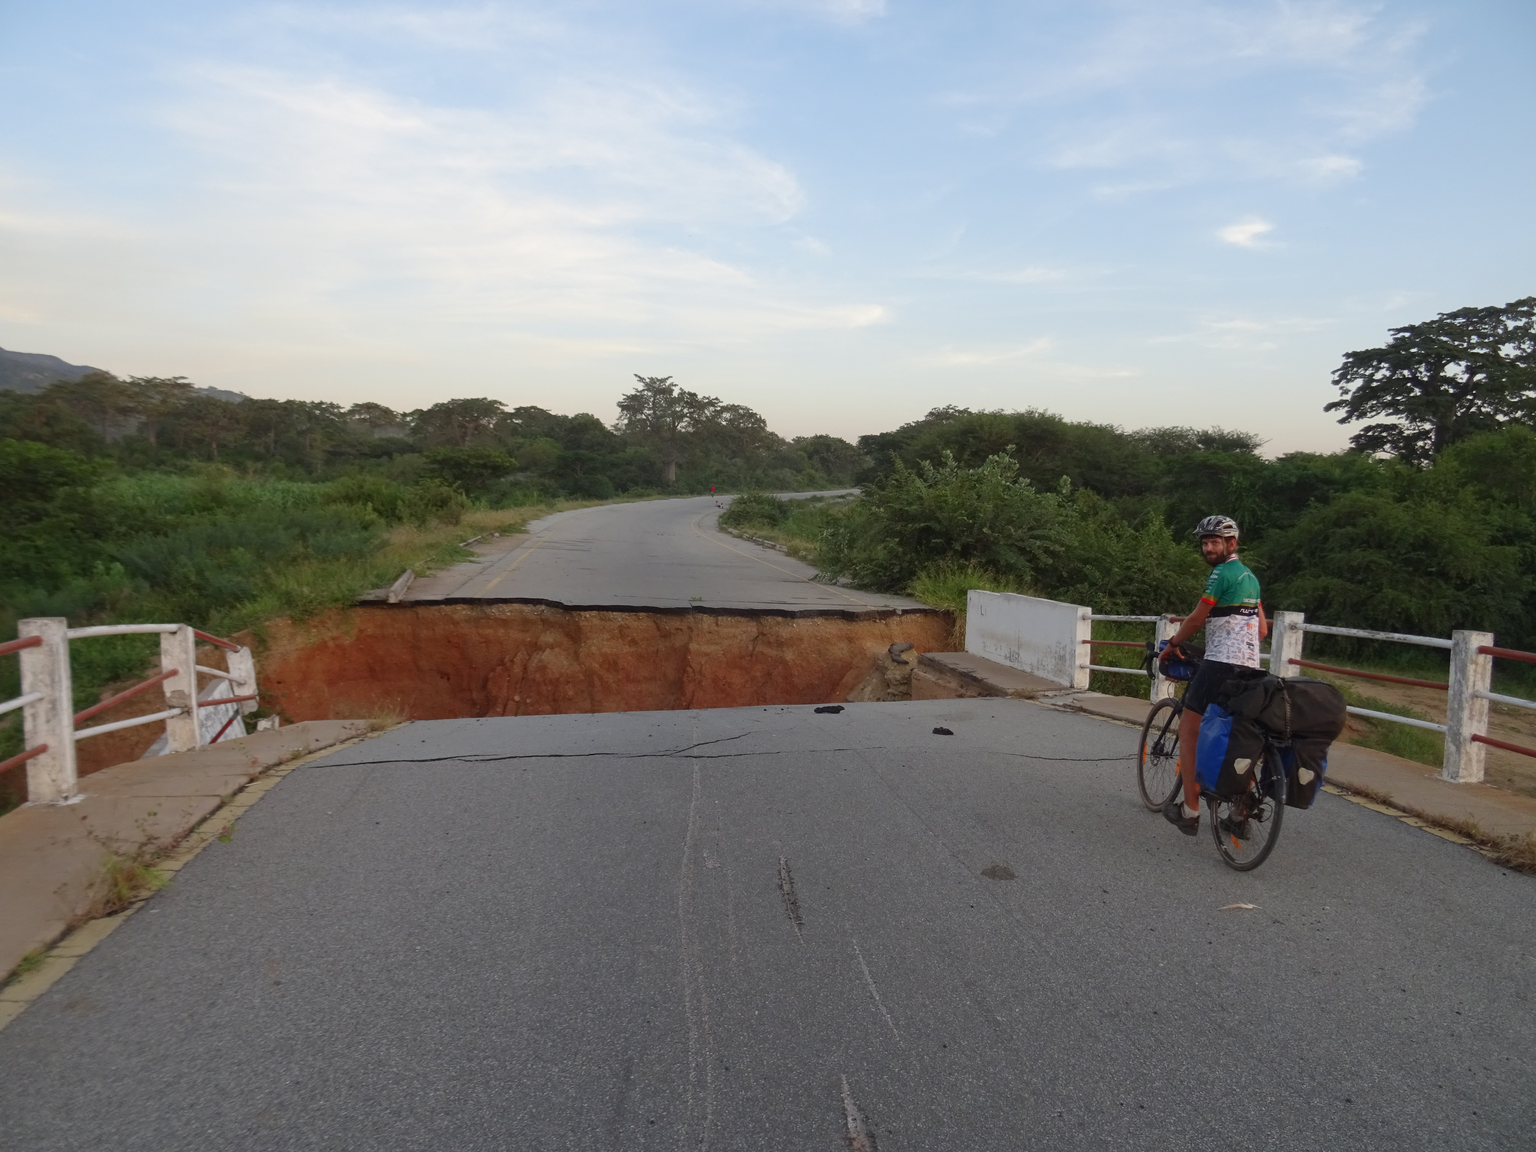 Bild 35
Angola, Chongoroi (02.03.2020):
Als wir in Angola eine Umfahrung bewusst missachteten, fanden wir uns vor dieser Herausforderung wieder. Die Brücke ist an einem Ende unterspült worden und ist  ...